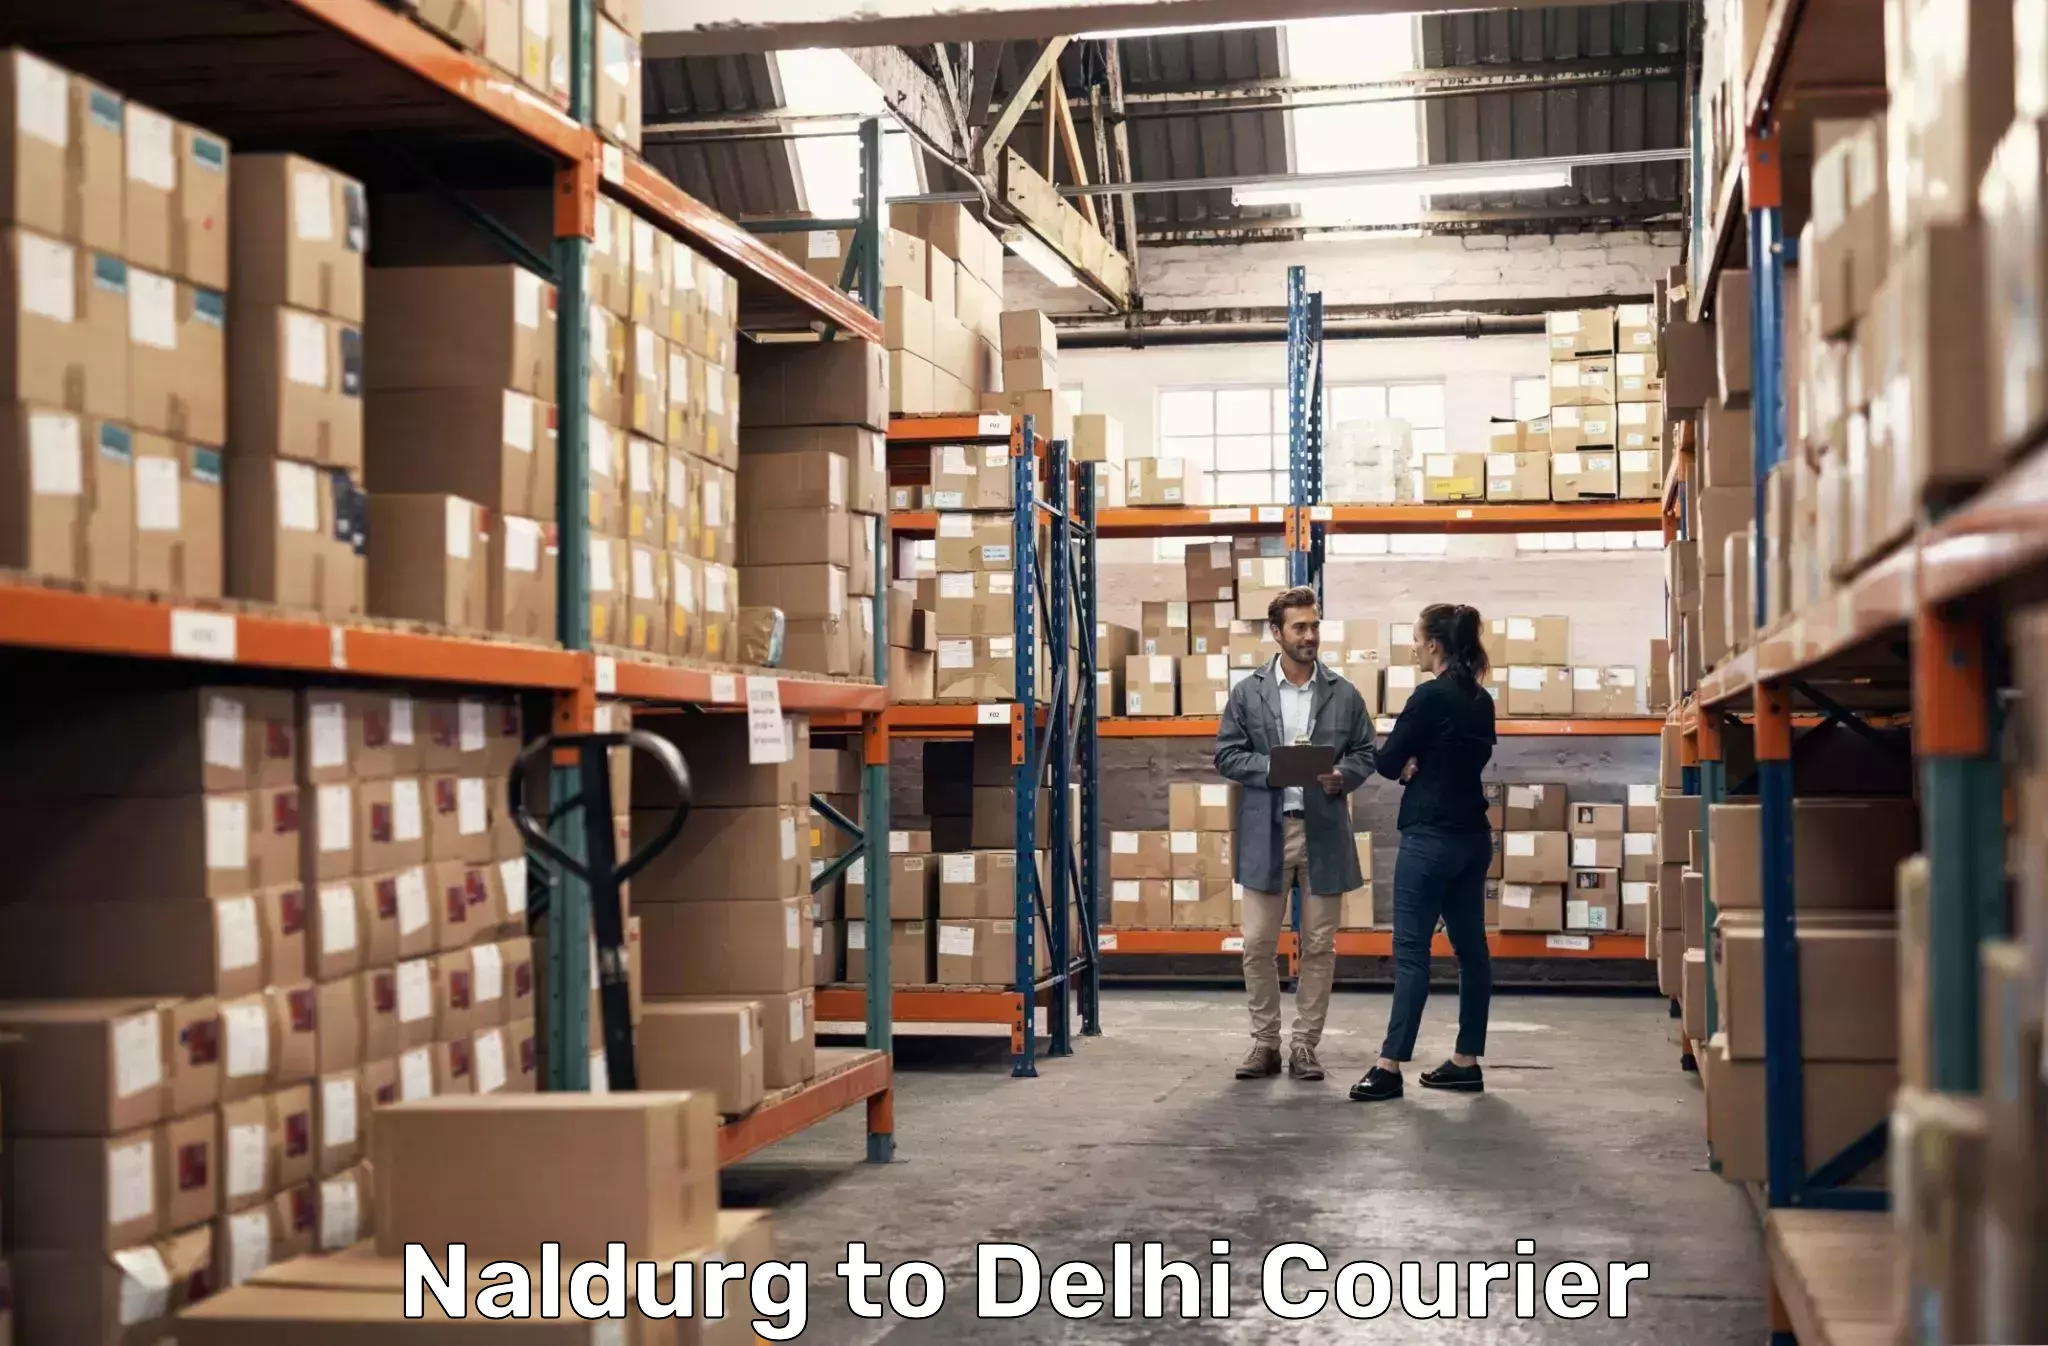 Urban courier service Naldurg to Jamia Millia Islamia New Delhi